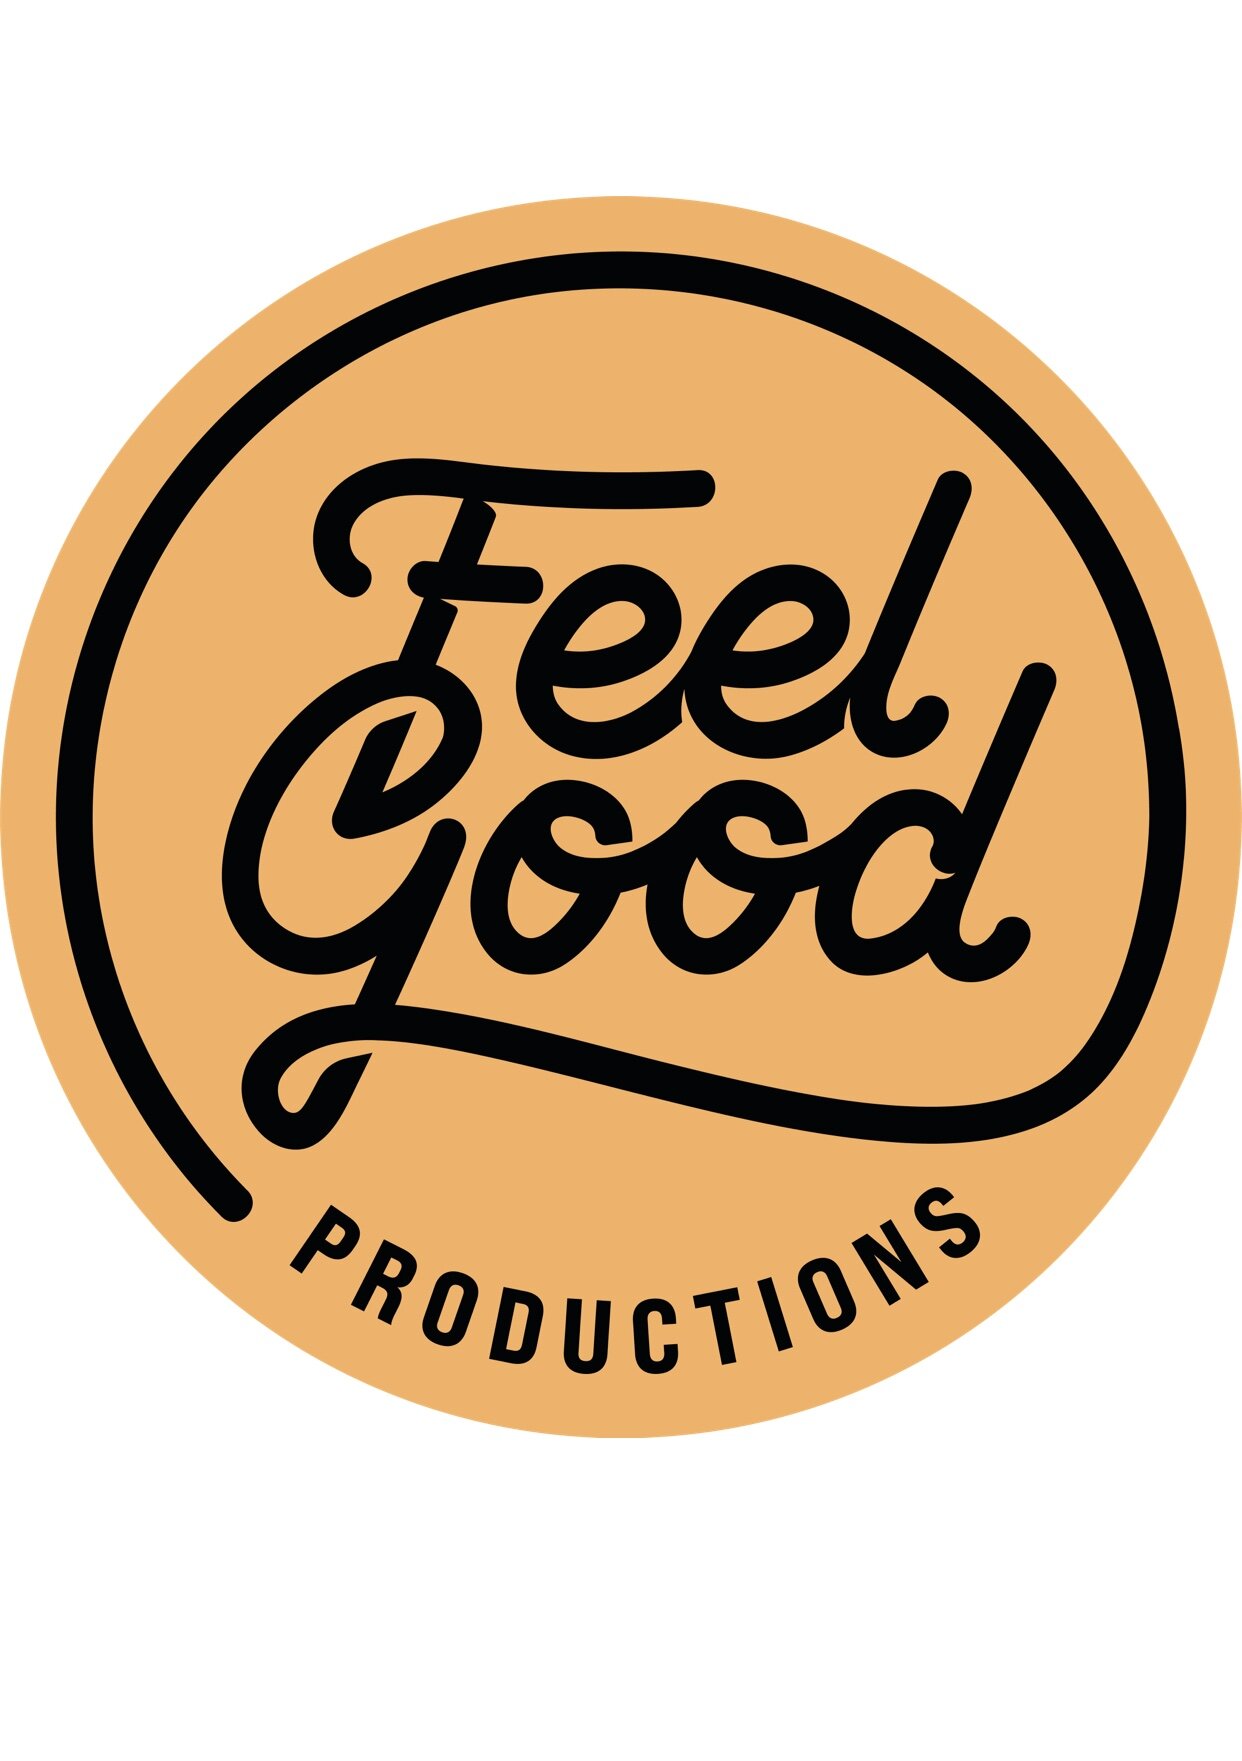 Feel Good Productions